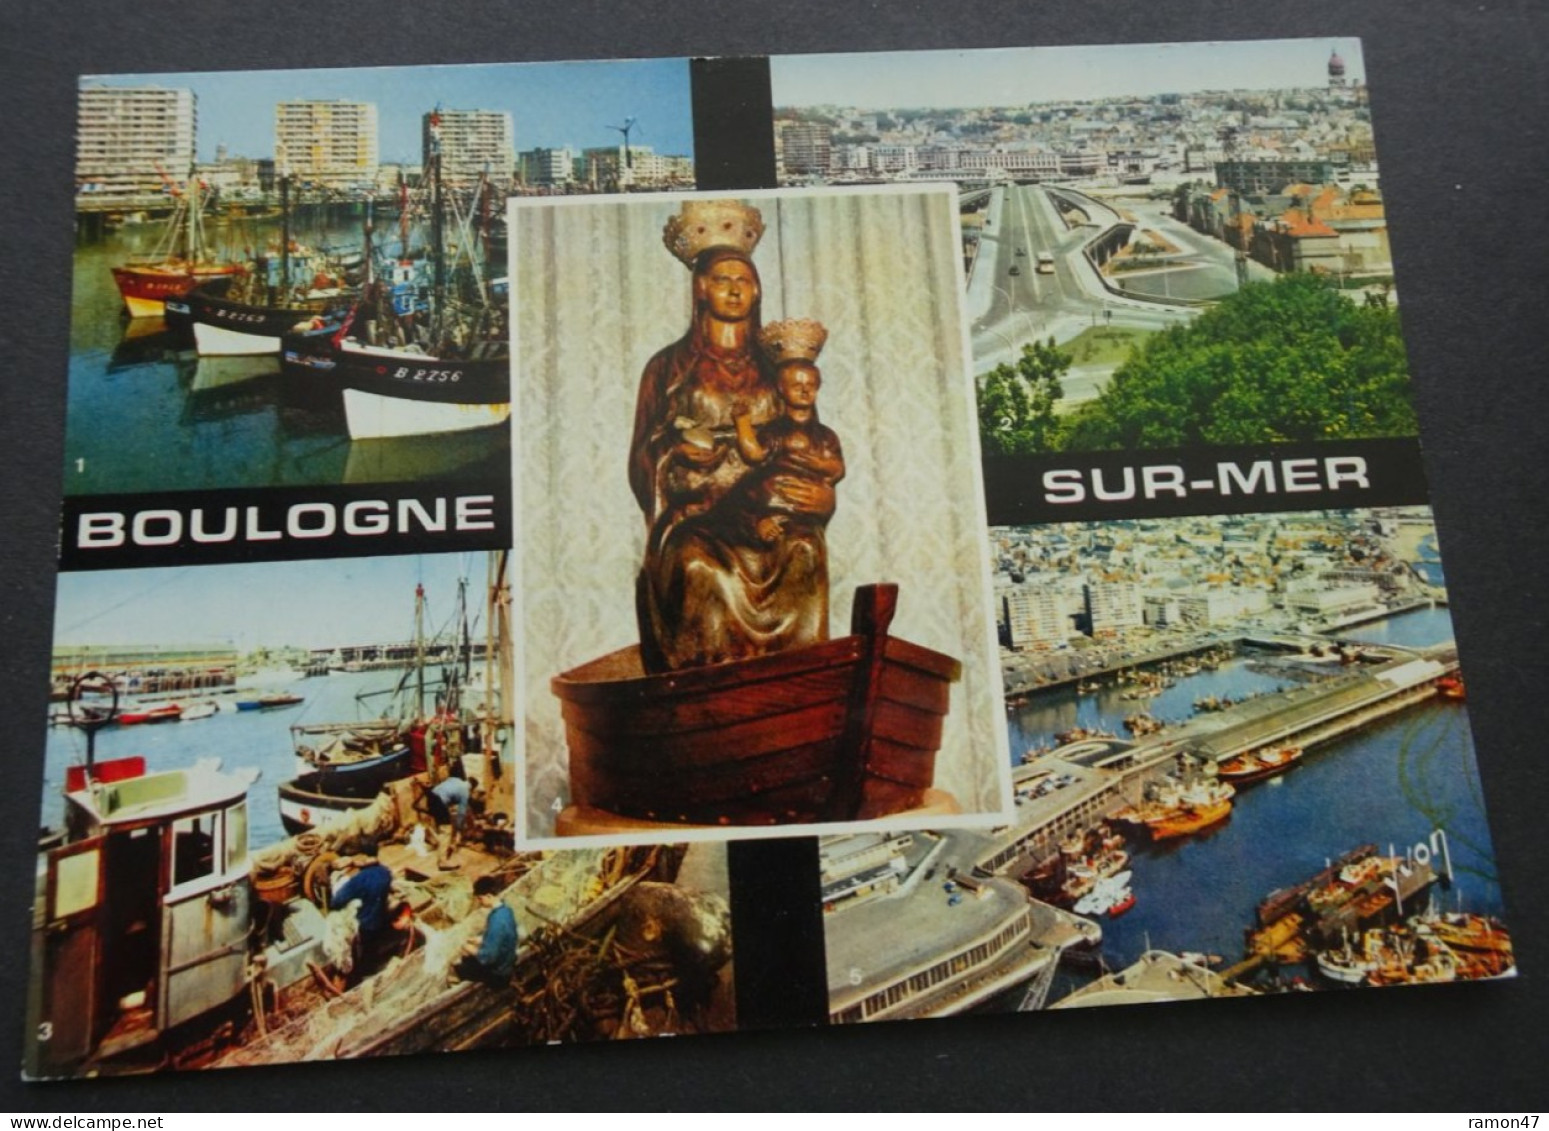 Boulogne-sur-Mer - Editions D'art Yvon, Paris - Boulogne Sur Mer